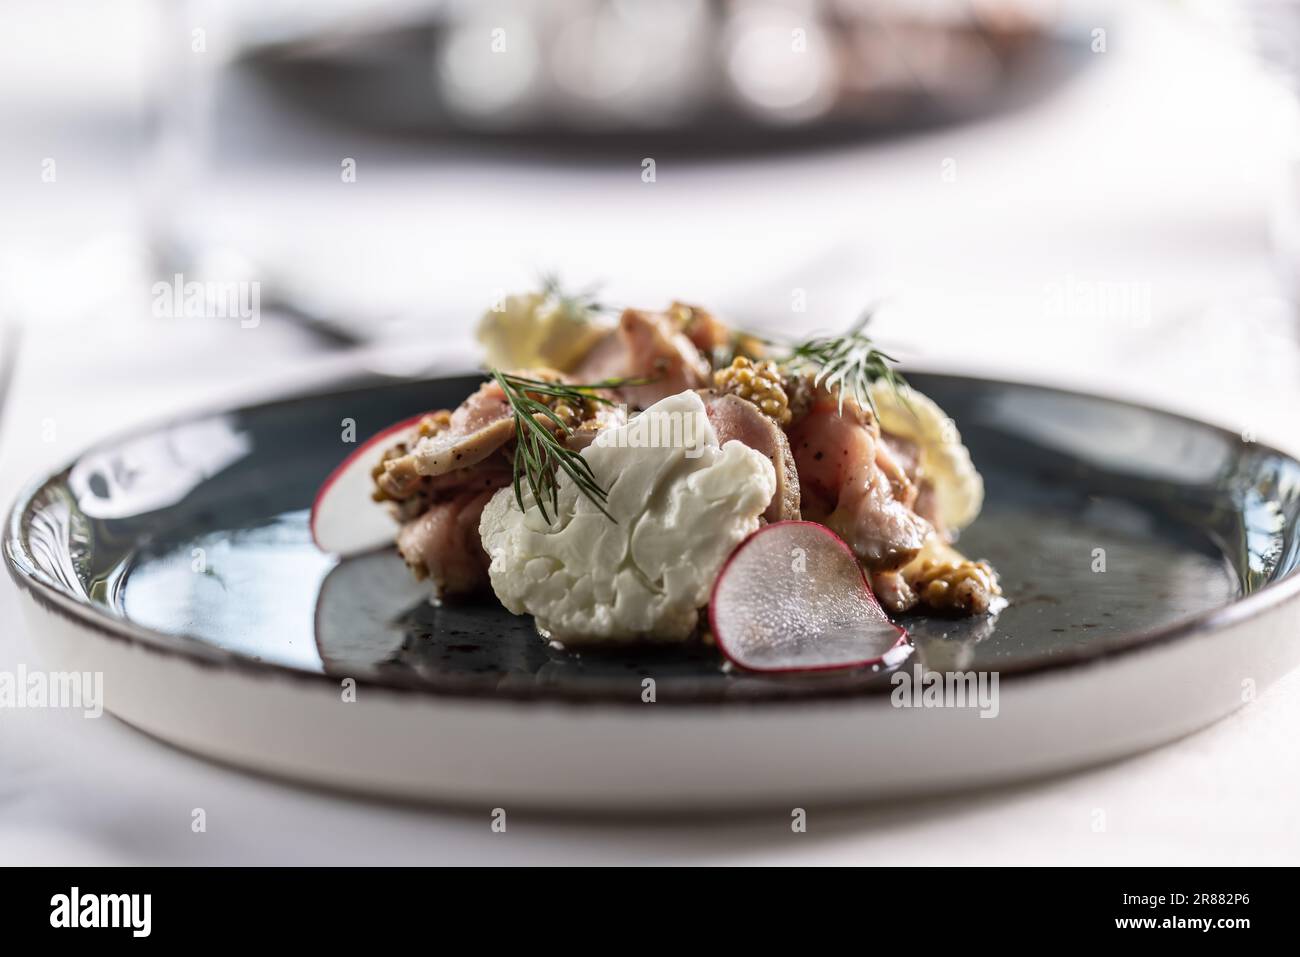 Stylen von Speisen mit Schweinefleisch, Blumenkohl, Senfkörnern und Dressing auf einem dunklen Teller. Stockfoto